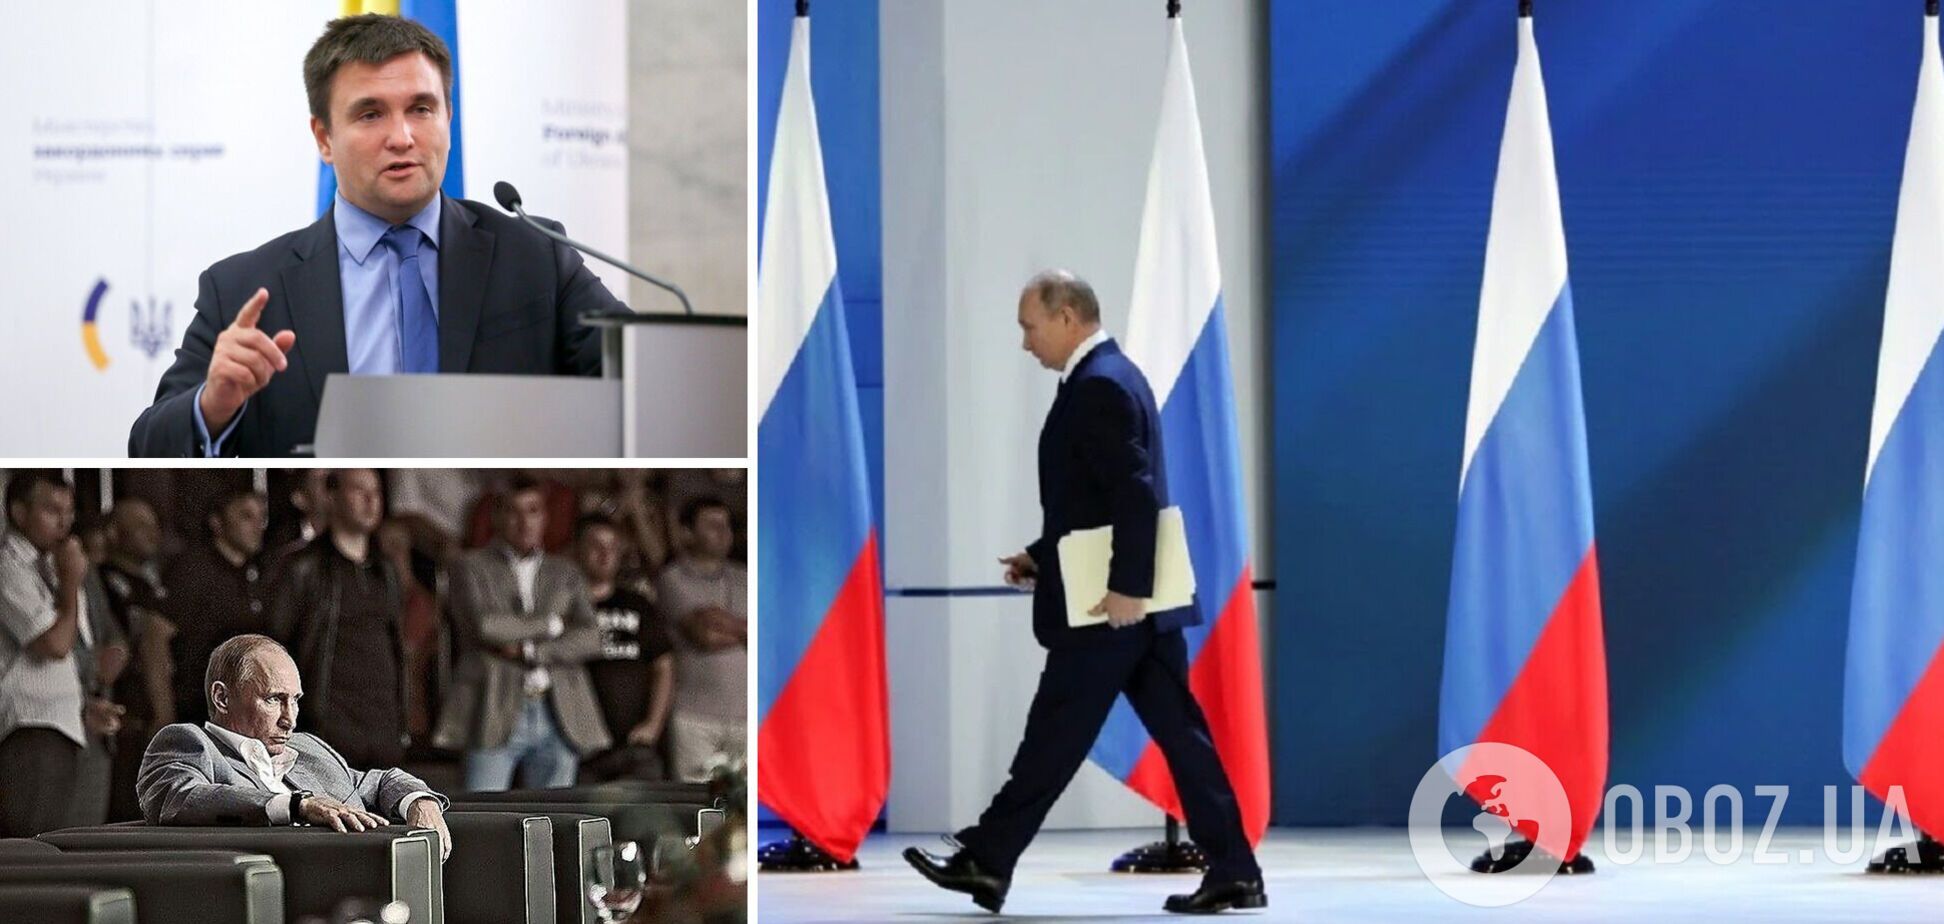 Климкин: Путин проиграл на всех фронтах, Совбез ООН говорит ему 'до свидания'. Интервью